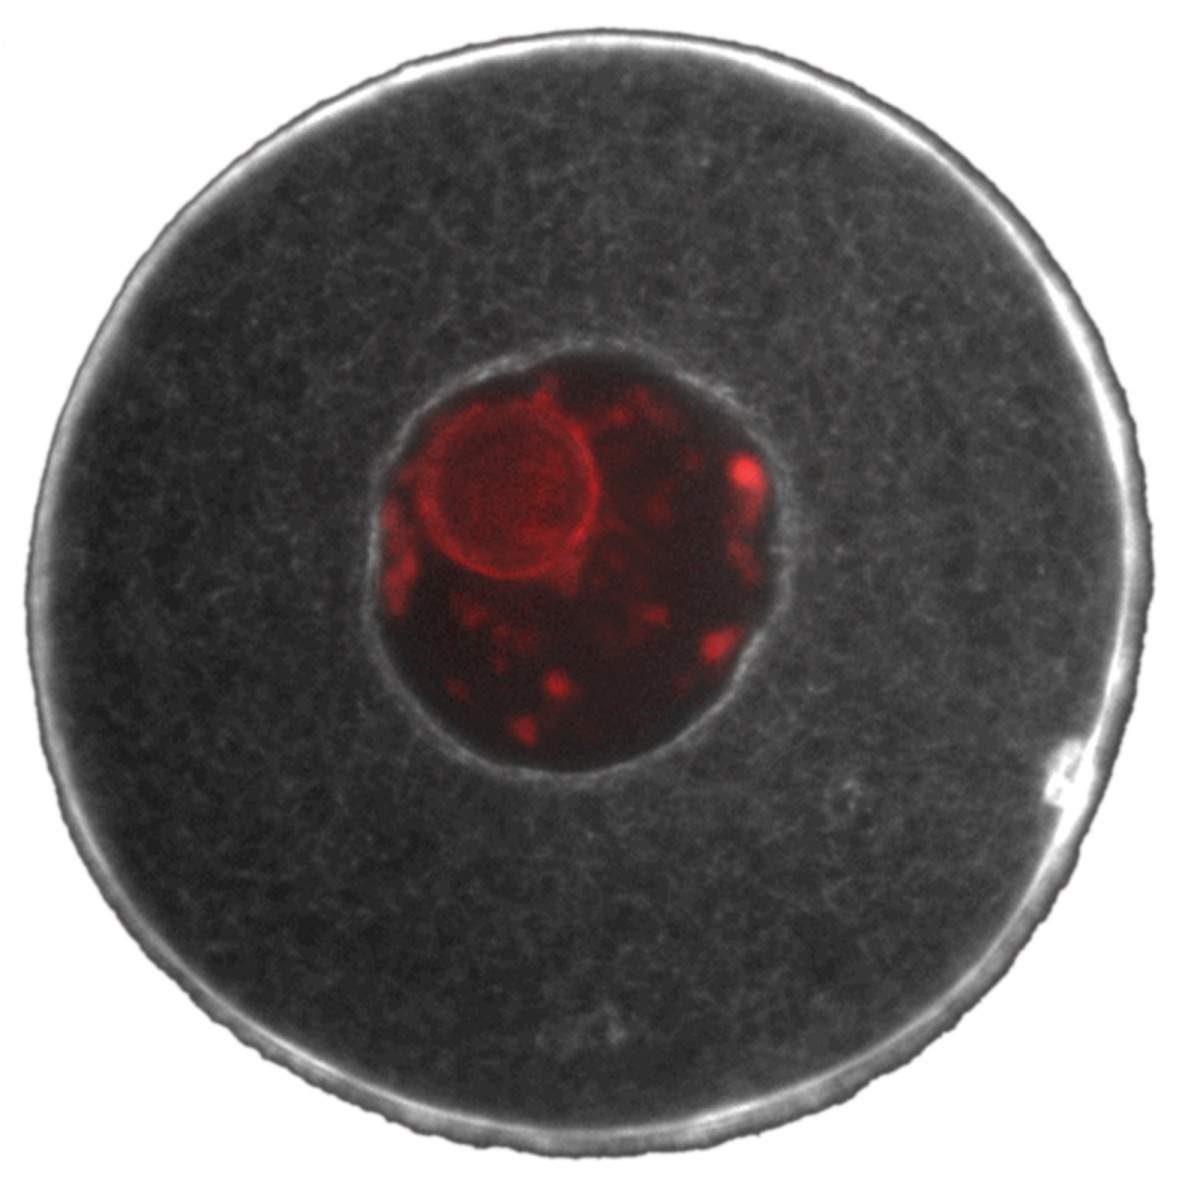 גרעין תא ביצית (באדום) במרכז, ומסביבו רשת סיבי האקטין של השלד התאי